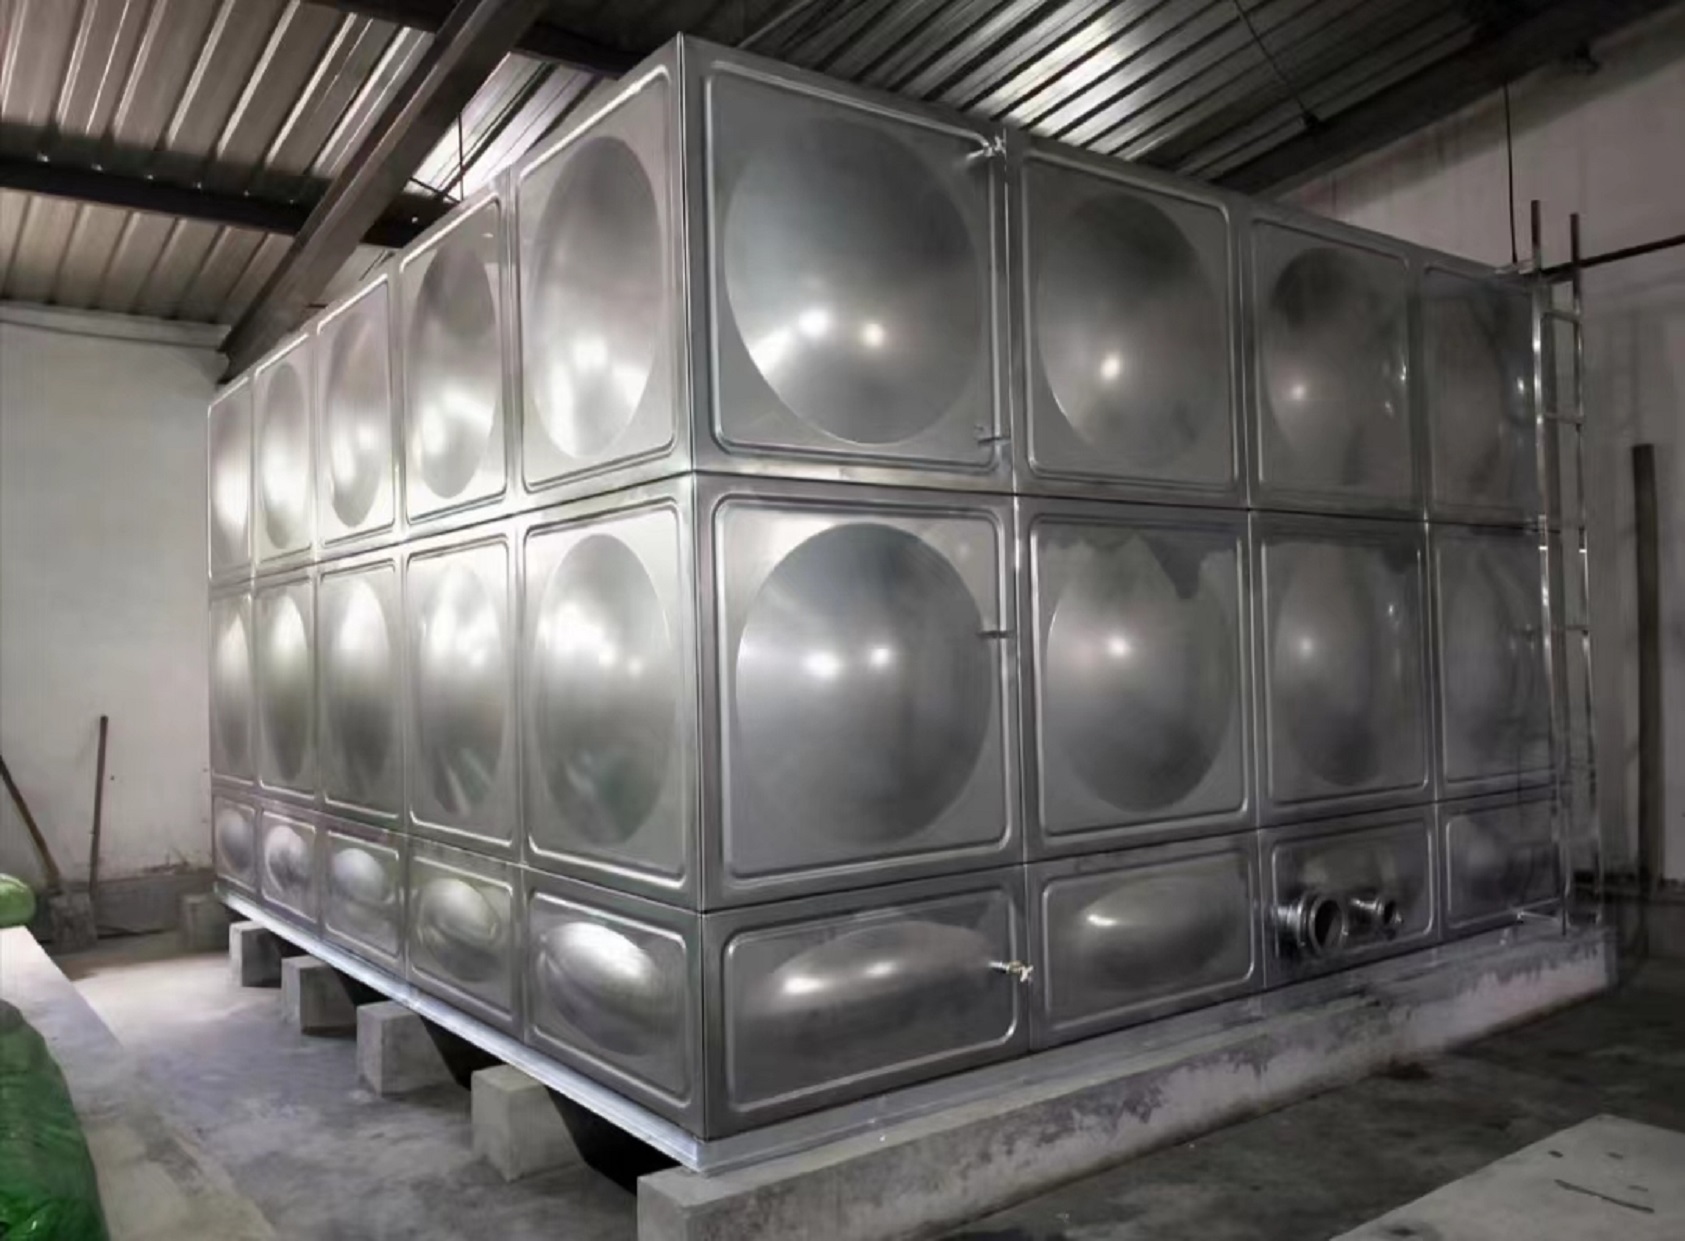 不锈钢水箱标准厚度不锈钢水箱的厚度标准并不是固定的，它受到多种因素的影响，包括水箱的容量、使用环境以及制造技术等。 一般来说，按照相关标准，不锈钢水箱的厚度应在1.2mm至2.5mm之间，其中，一般的不锈钢水箱厚度为1.2mm至1.5mm，而特殊的水箱厚度可能在1.5mm至2.5mm之间。另外，有些情况下，不锈钢水箱的厚度可能会根据水箱的高度或容积进行调整。例如，当水箱高度为1米时，侧板的厚度可以选用1.5毫米，高度为1.5米时，侧板的厚度可以选用2.0毫米。对于容积更大的水箱，板厚应相应增加，以保证水箱的强度和稳定性。 此外，不锈钢水箱的厚度还会受到使用环境的影响。在寒冷地区，水箱需要更加坚固和耐用，因此厚度可能需要更大一些。而在高温地区，由于水压较小，厚度可以适当减小。 总的来说，选择合适的不锈钢水箱不仅需要考虑到其厚度标准，还需要综合考虑材料质量、制造技术、使用环境等多个因素。